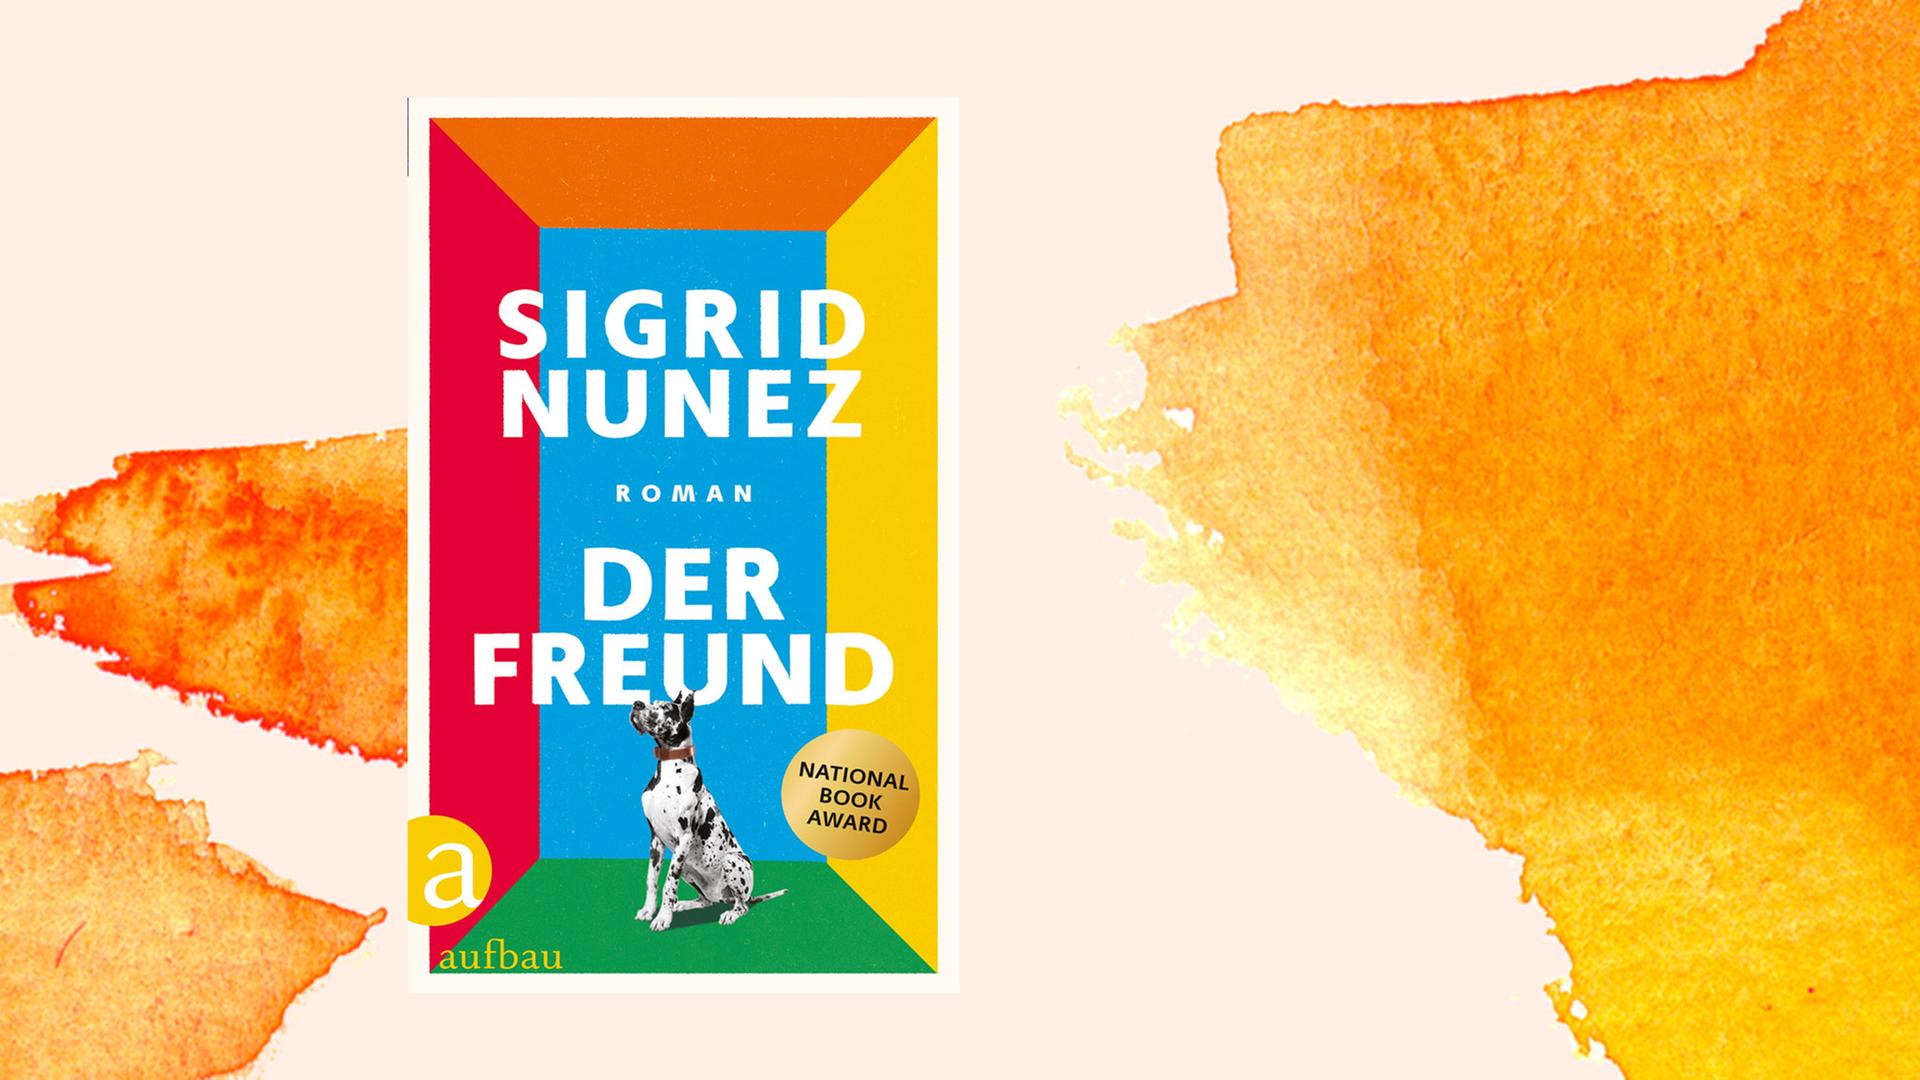 Das Bild zeigt das Cover von Sigrid Nunez neuem Roman "Der Freund", in dem die Autorin pointierte Seitenhiebe gegen die literarische Szene verteilt.